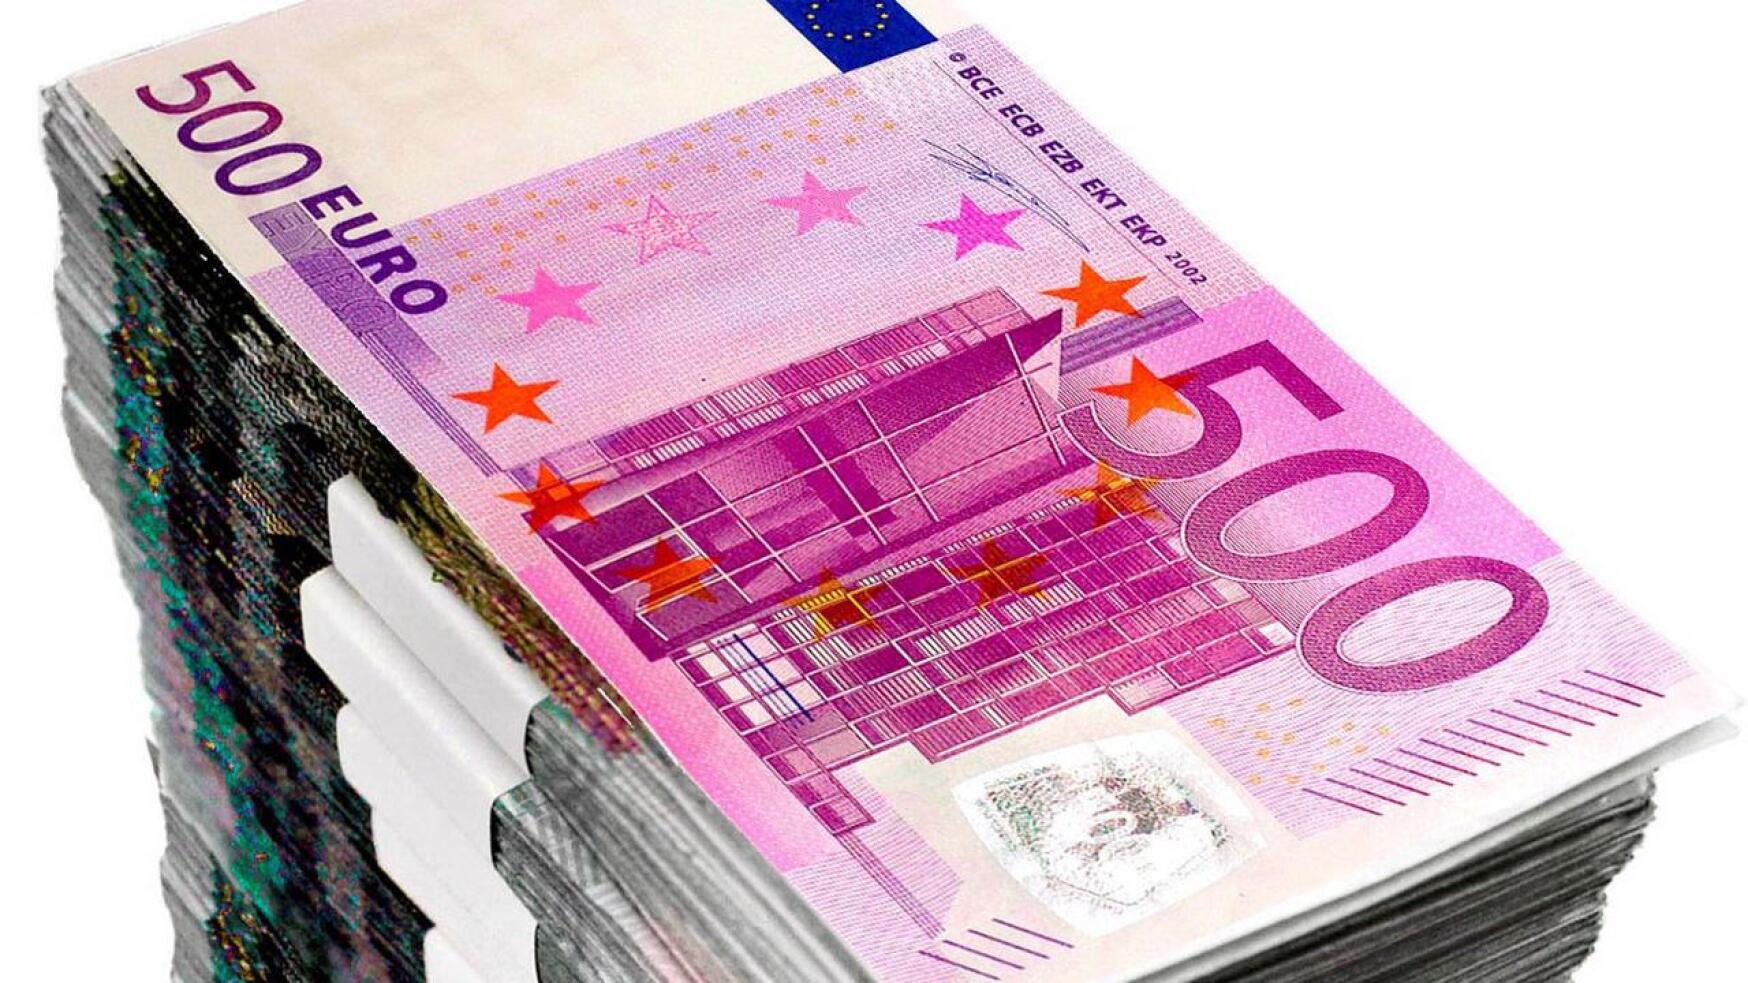 Keskituloinen ylivieskalainen kotitalous maksaa yli 4 800 euroa enemmän veroa kuin perhe vastaavilla tuloilla Kauniaisissa